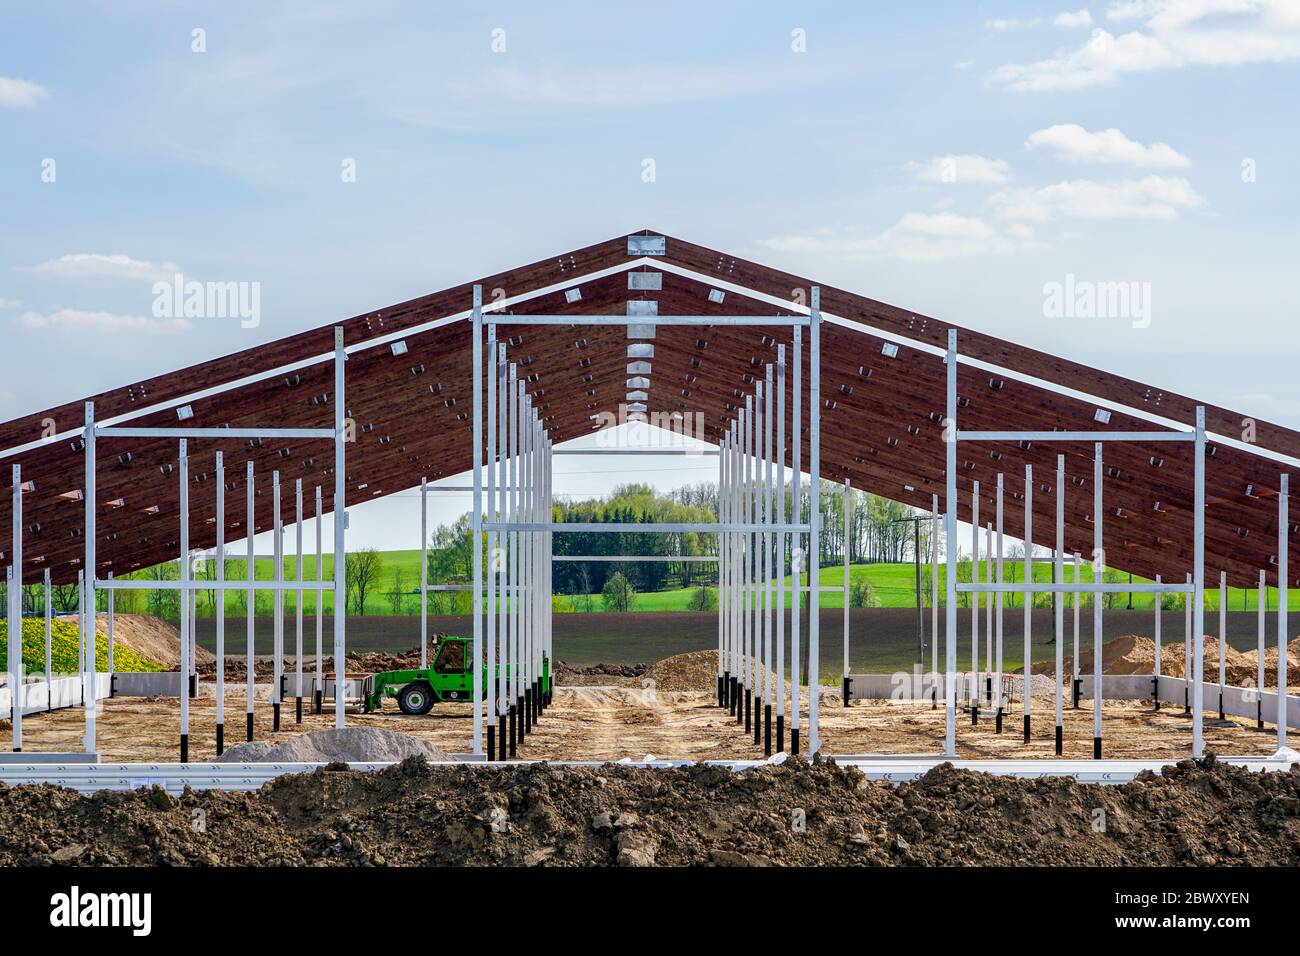 vista de una nueva estructura de metal de un edificio agrícola en construcción Foto de stock